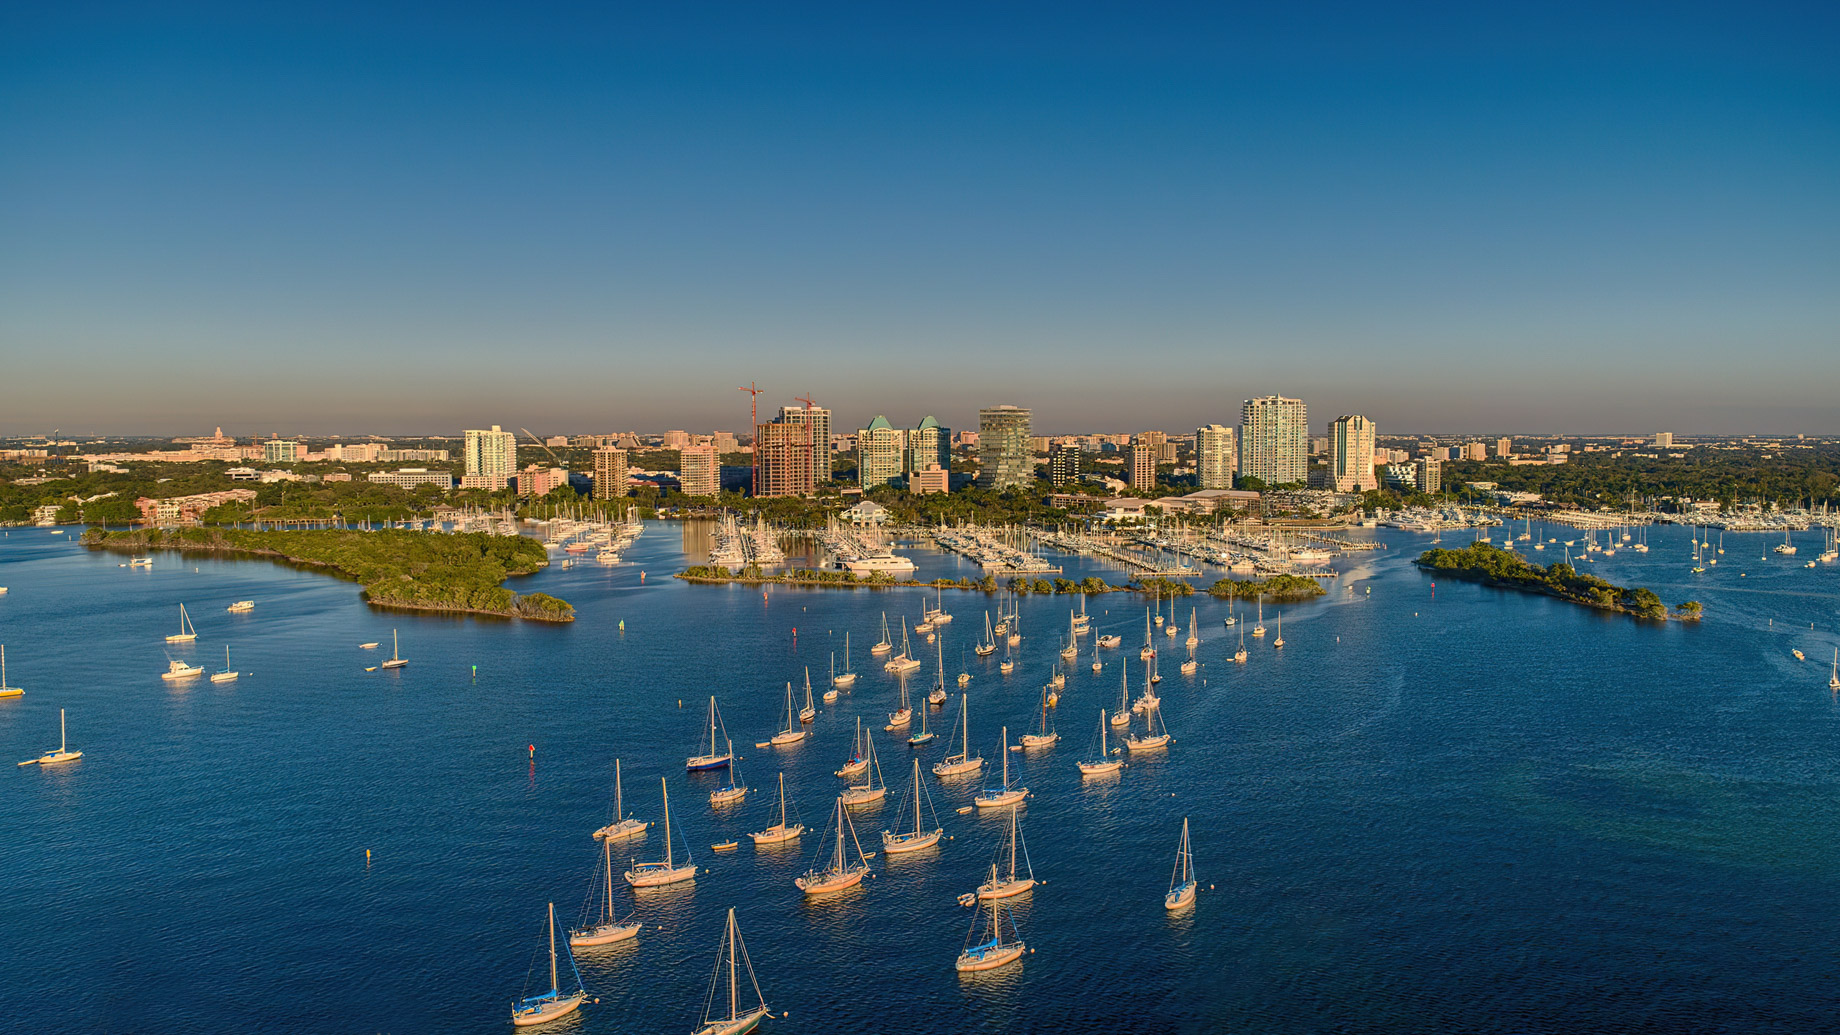 The Ritz-Carlton Coconut Grove, Miami Hotel - Miami, FL, USA - Ocean View Aerial